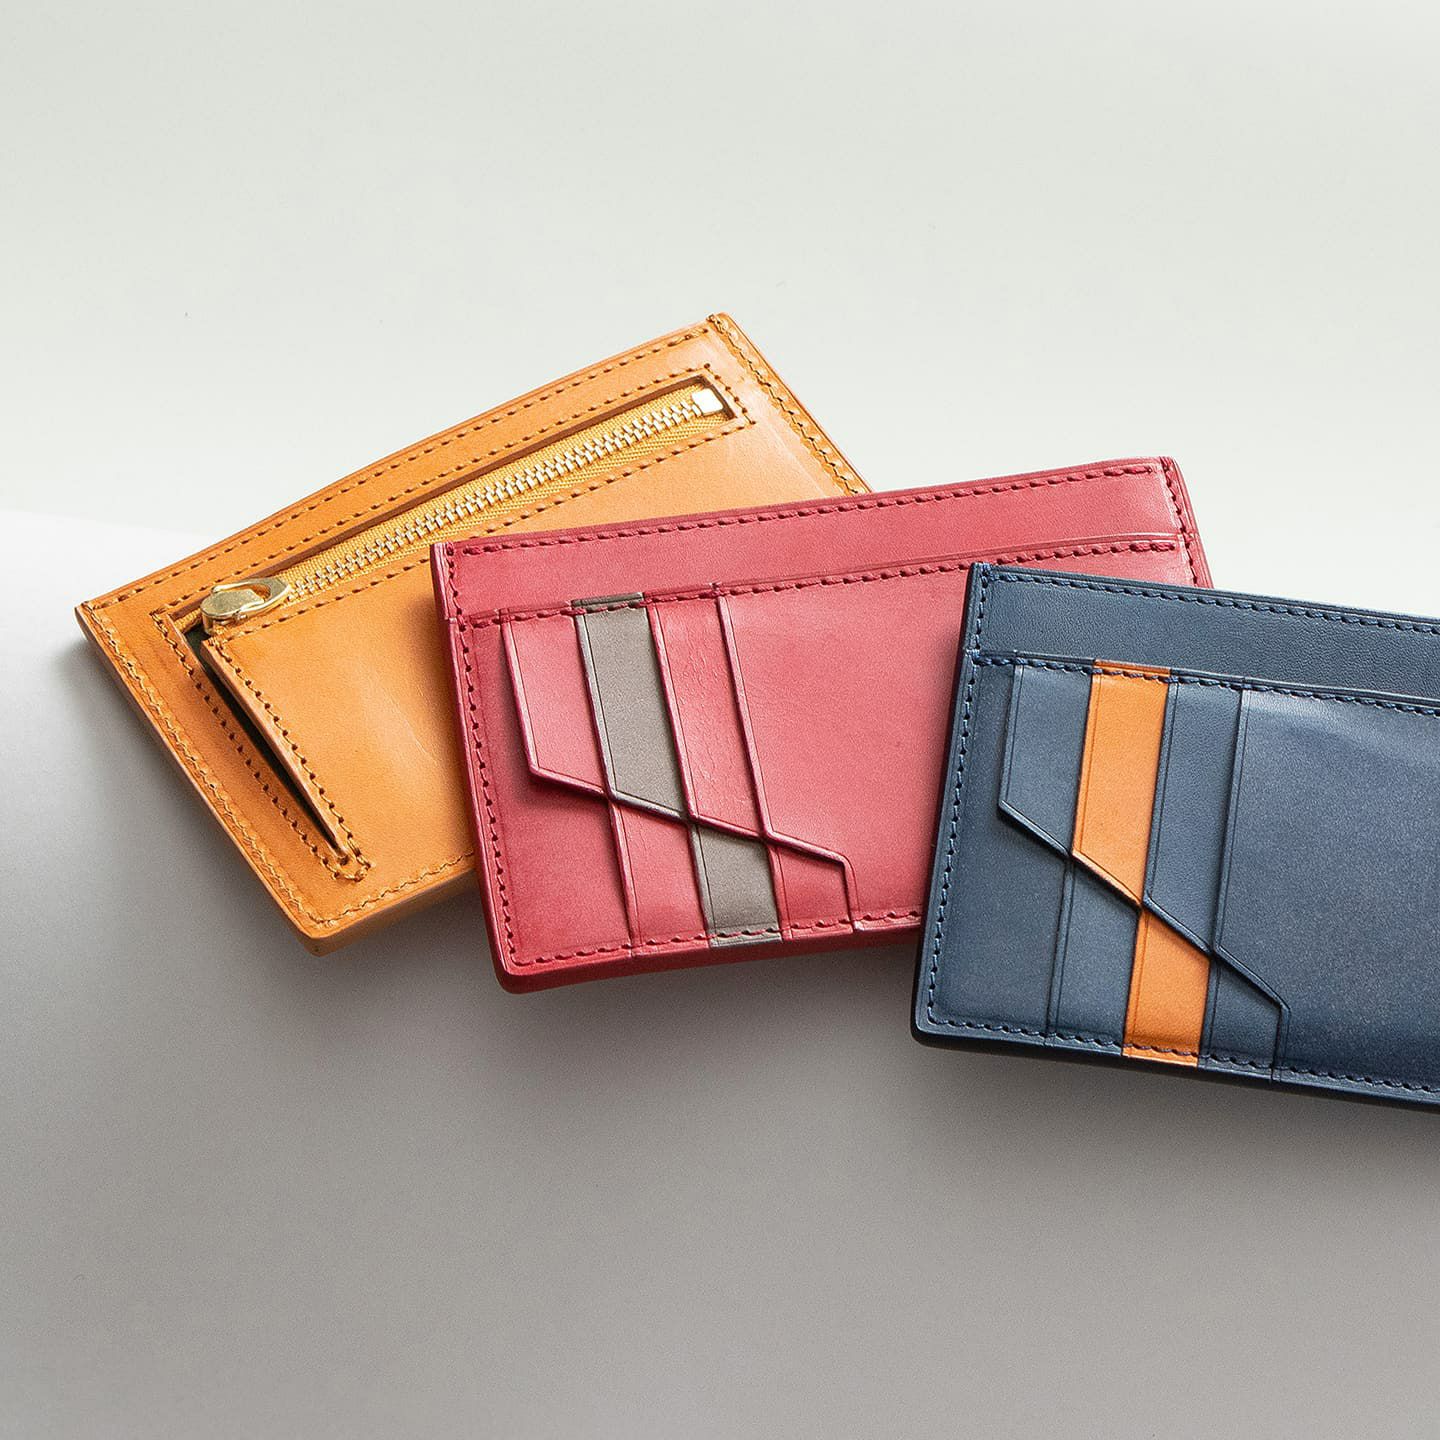 ロロマ ミドルフラグメントケース | 大人のバッグ・財布･ ミニ・コンパクト財布 など拘りの日本製ブランドなら MLS